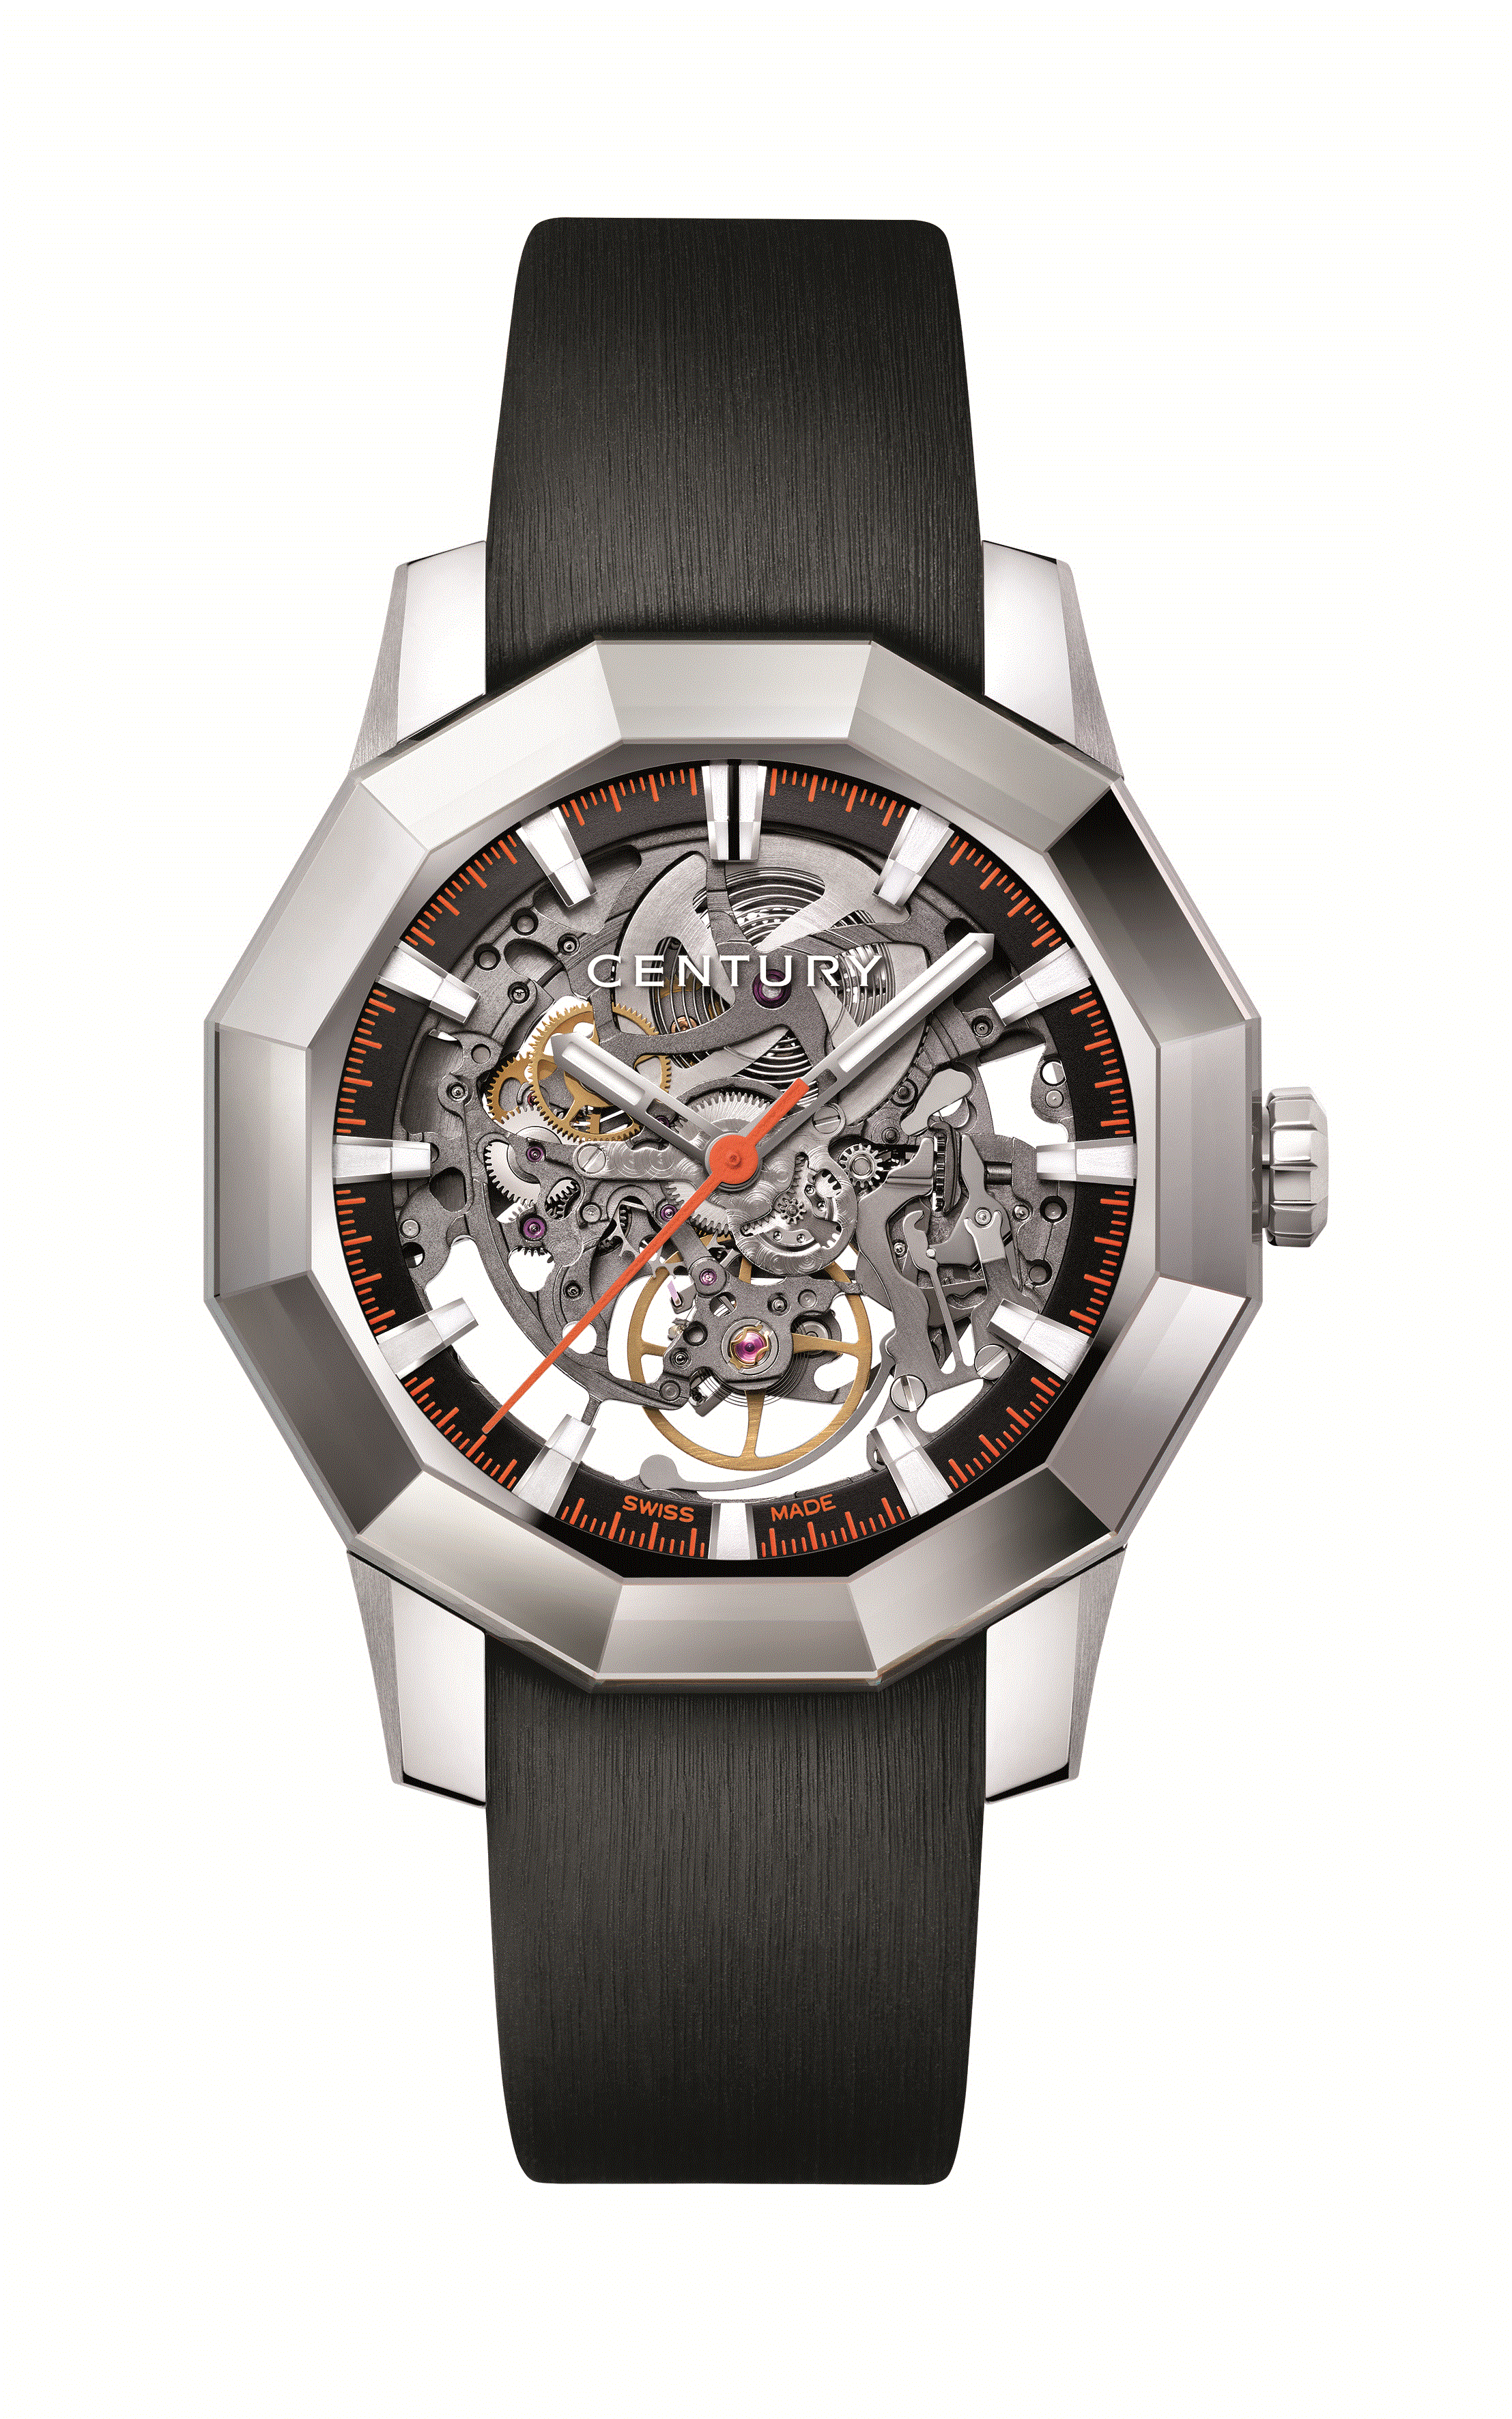 センチュリー(CENTURY) | ブランド腕時計の正規販売店紹介サイト 